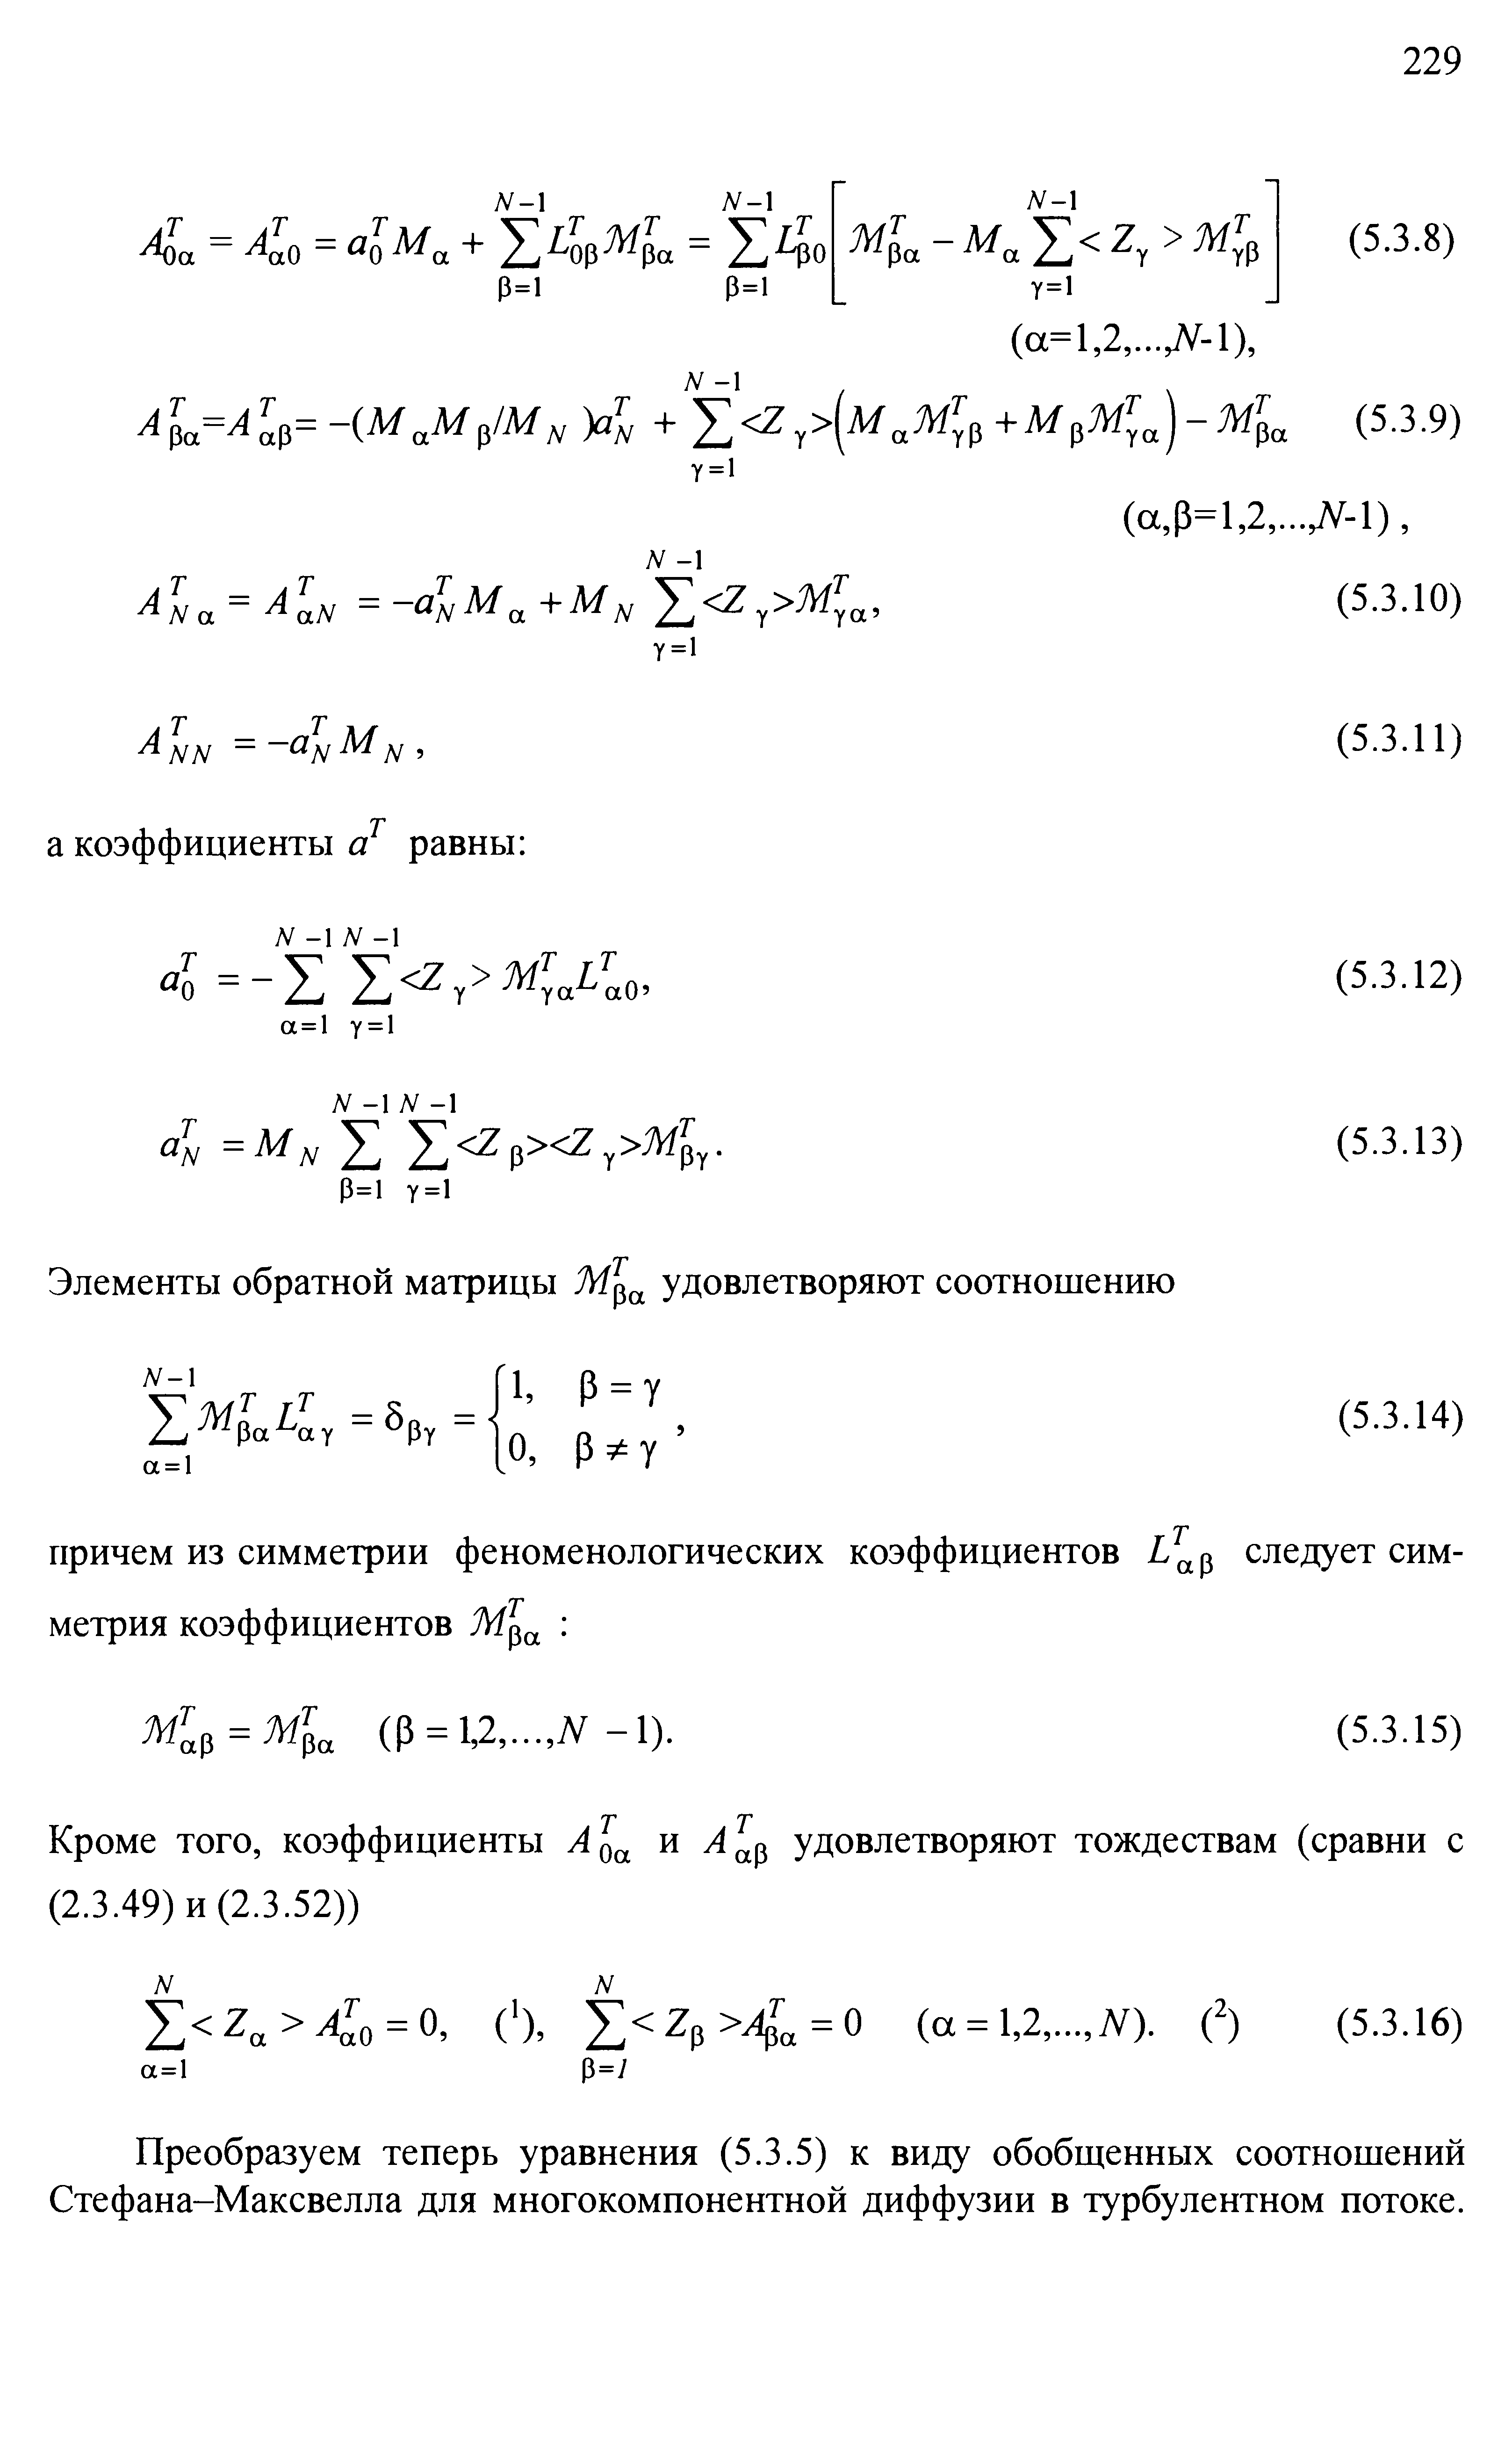 Преобразуем теперь уравнения (5.3.5) к виду обобщенных соотношений Стефана-Максвелла для многокомпонентной диффузии в турбулентном потоке.
